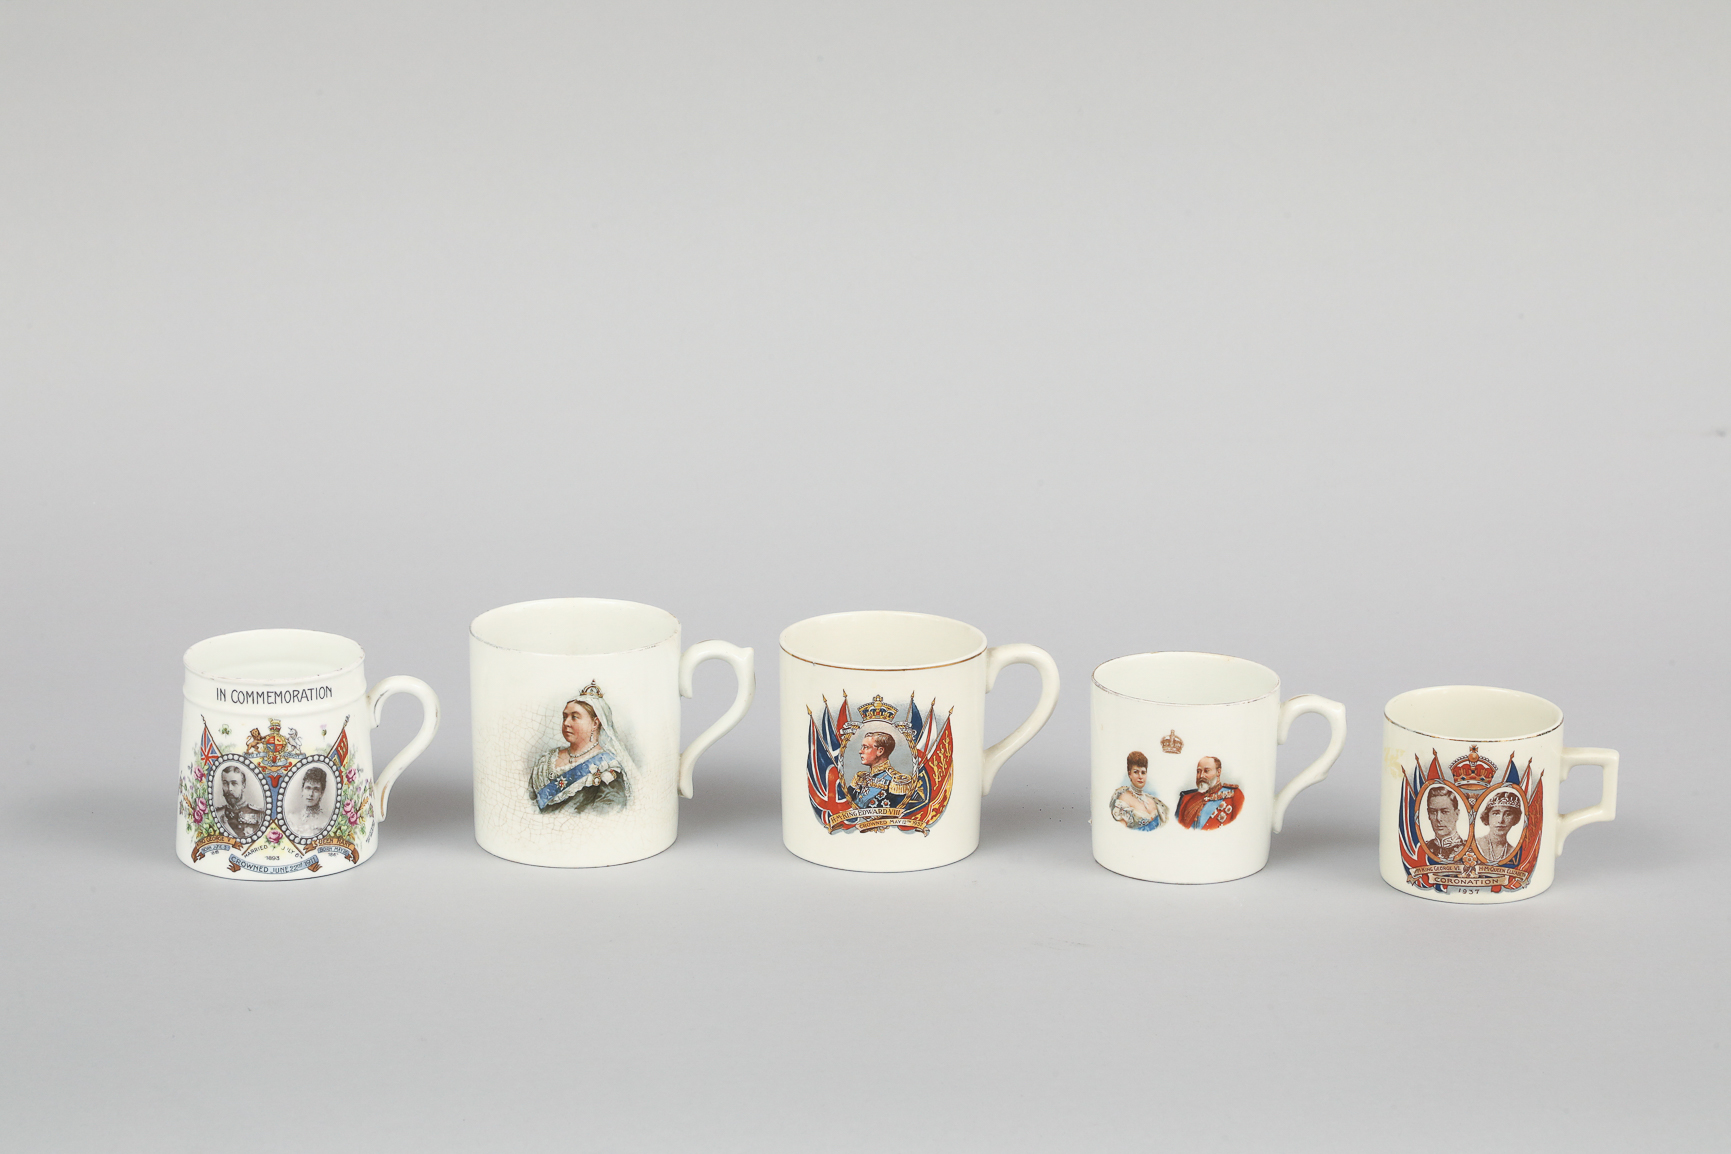 Suite de cinq mugs à déco de personnages de la cour royale anglaise 7cm à 9cm